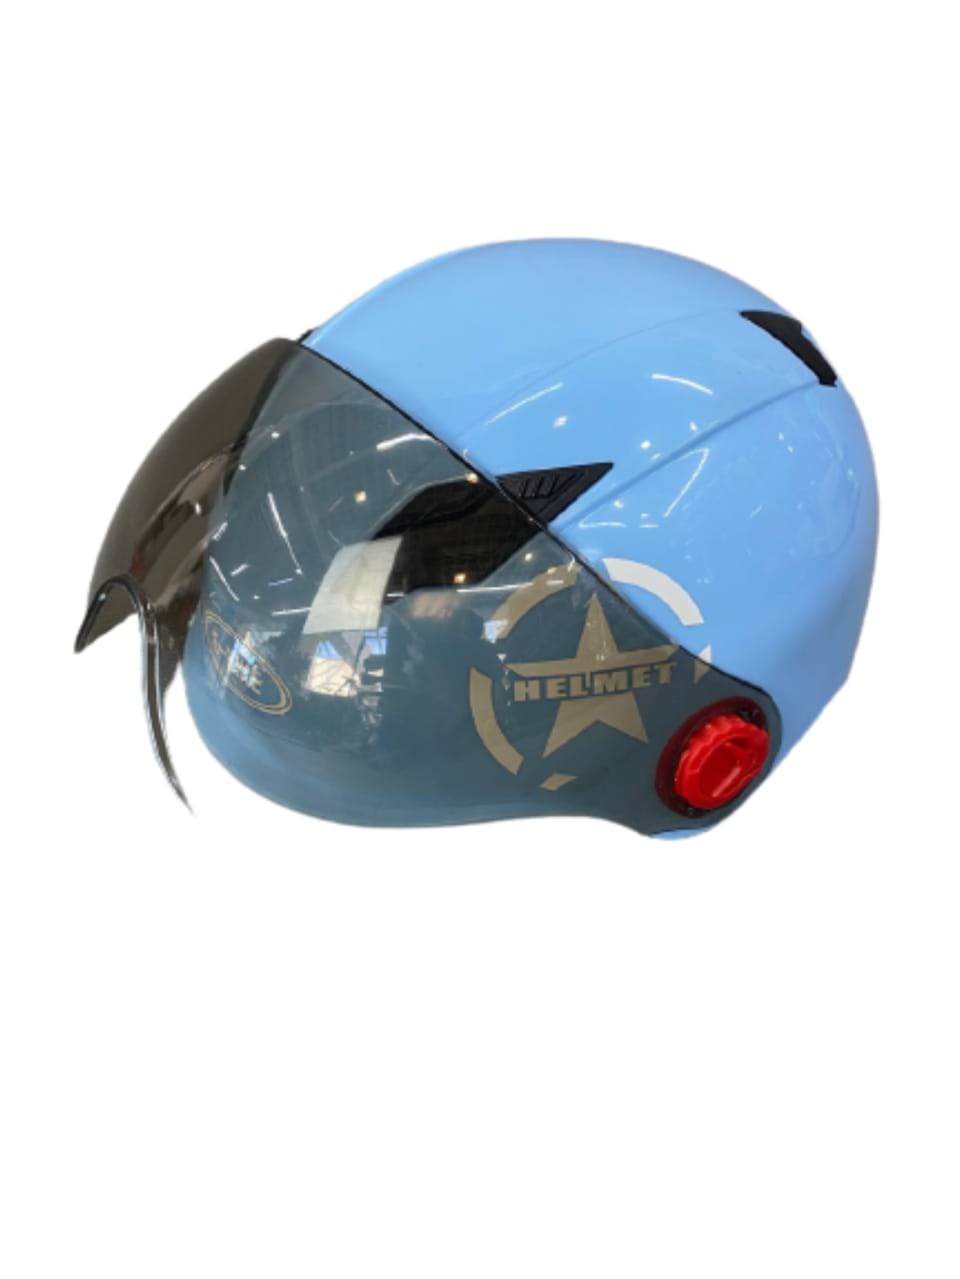 Шлем Helmet Для Электросамоката и Скутера